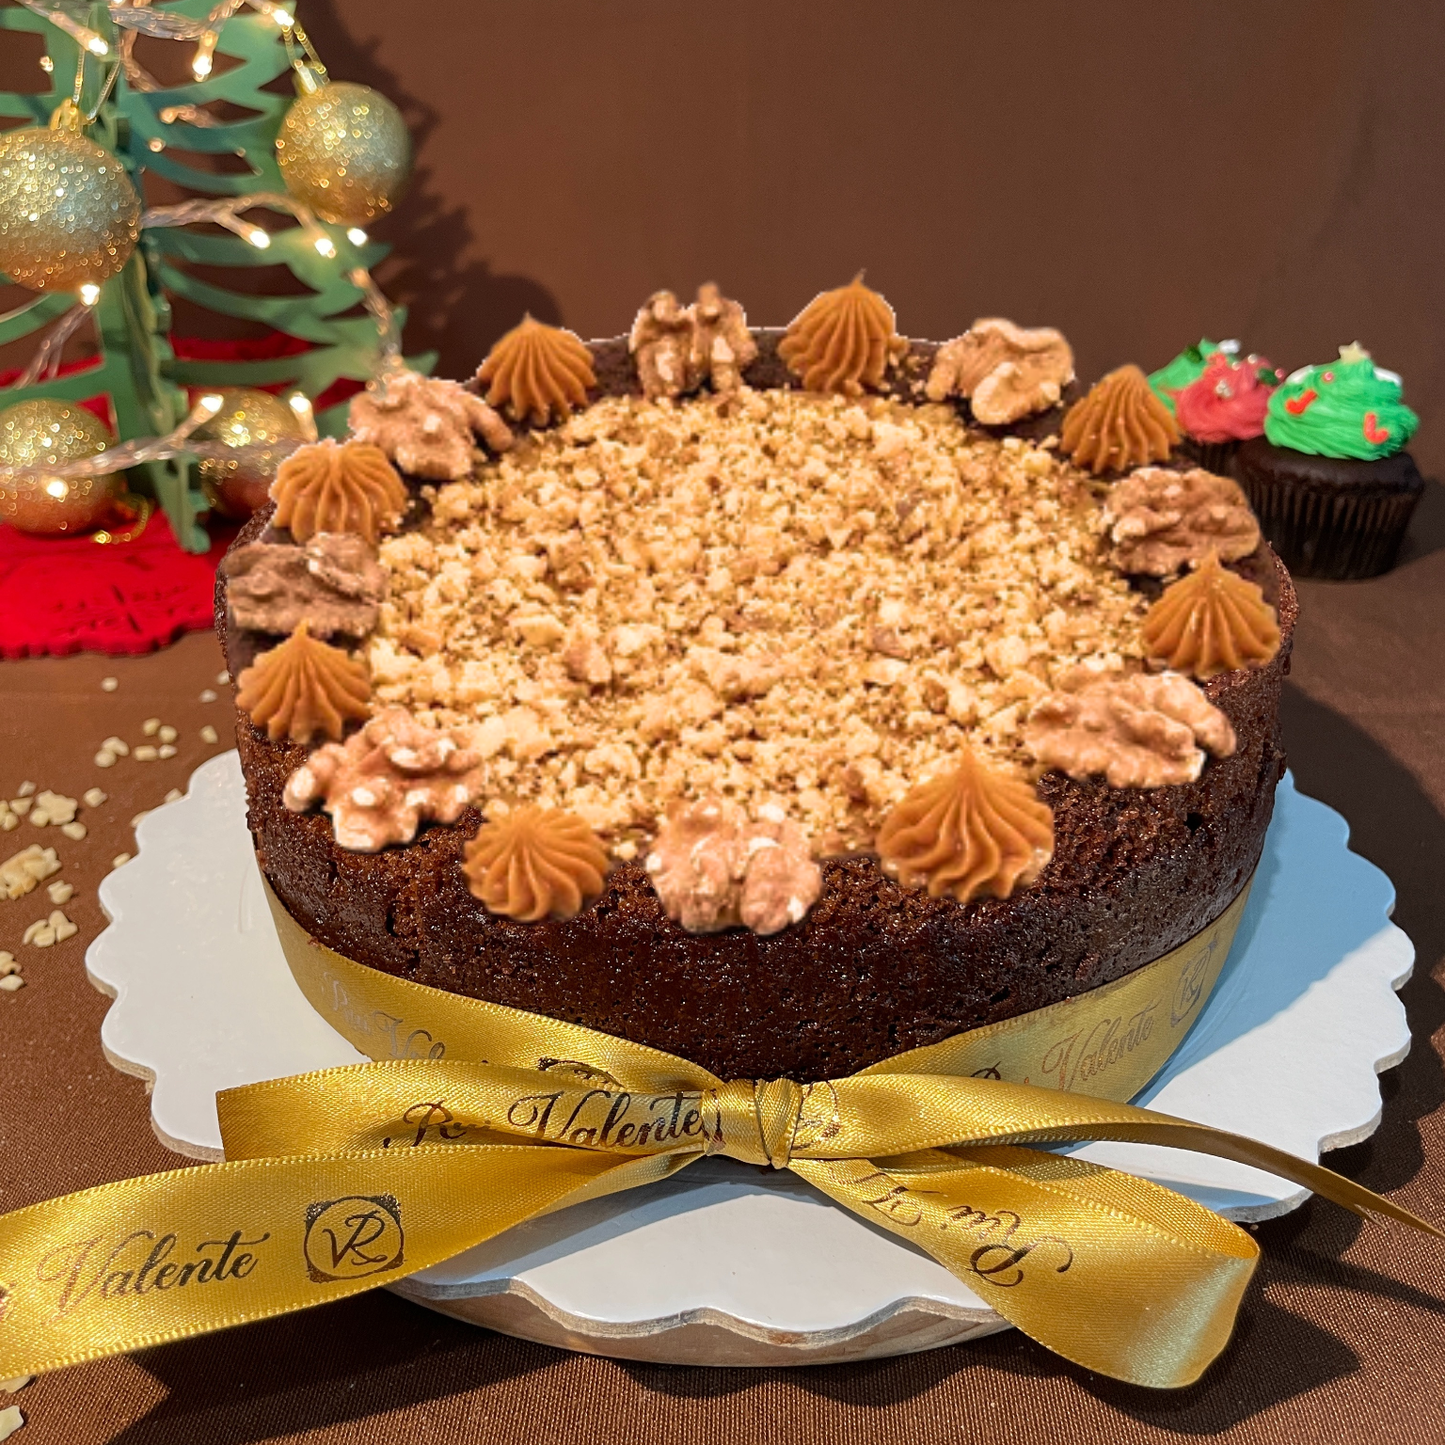 Pool Cake de Chocolate com recheio de Doce de Leite e topping de nozes